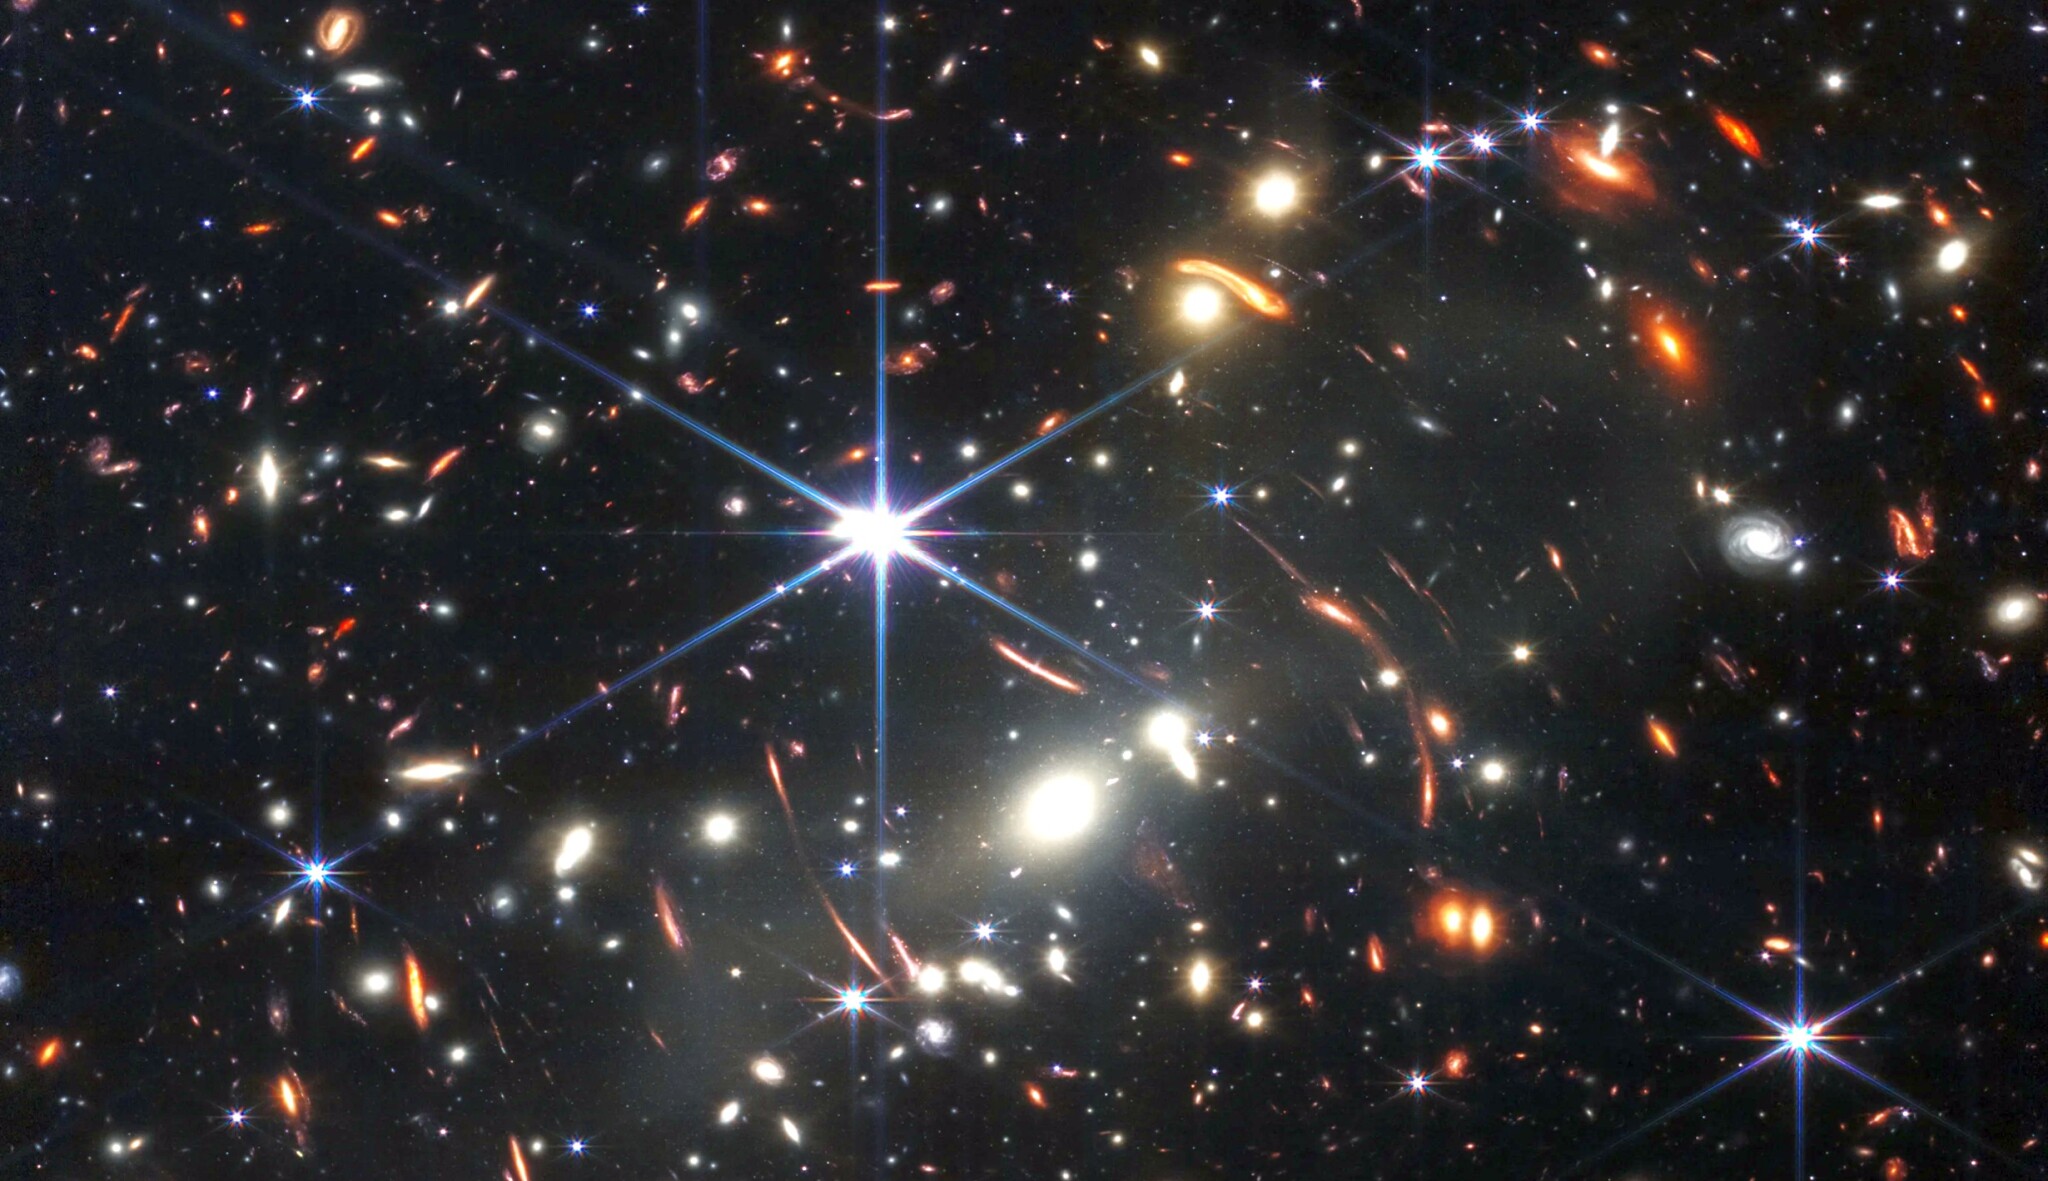 Stovky nejvzdálenějších galaxií. První snímek z Jamese Webba odhaluje hlubiny vesmíru